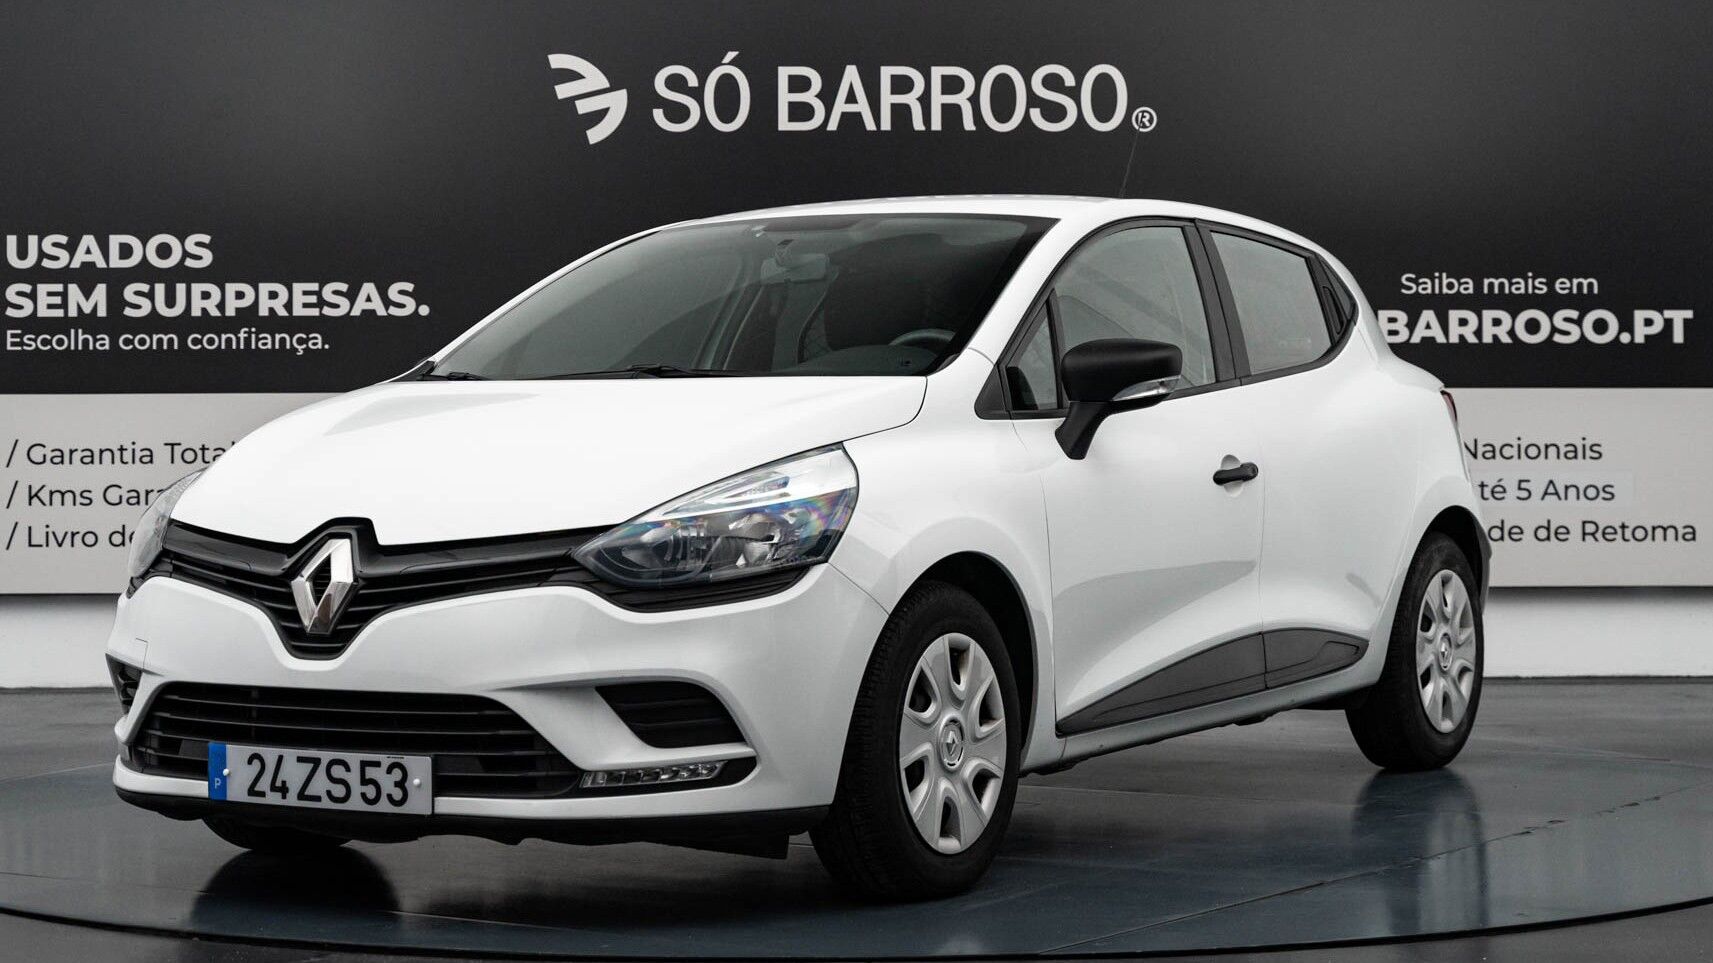 Renault Clio 1.5 dCi Zen com 83 000 km por 15 990 € SÓ BARROSO® | Automóveis de Qualidade | Braga